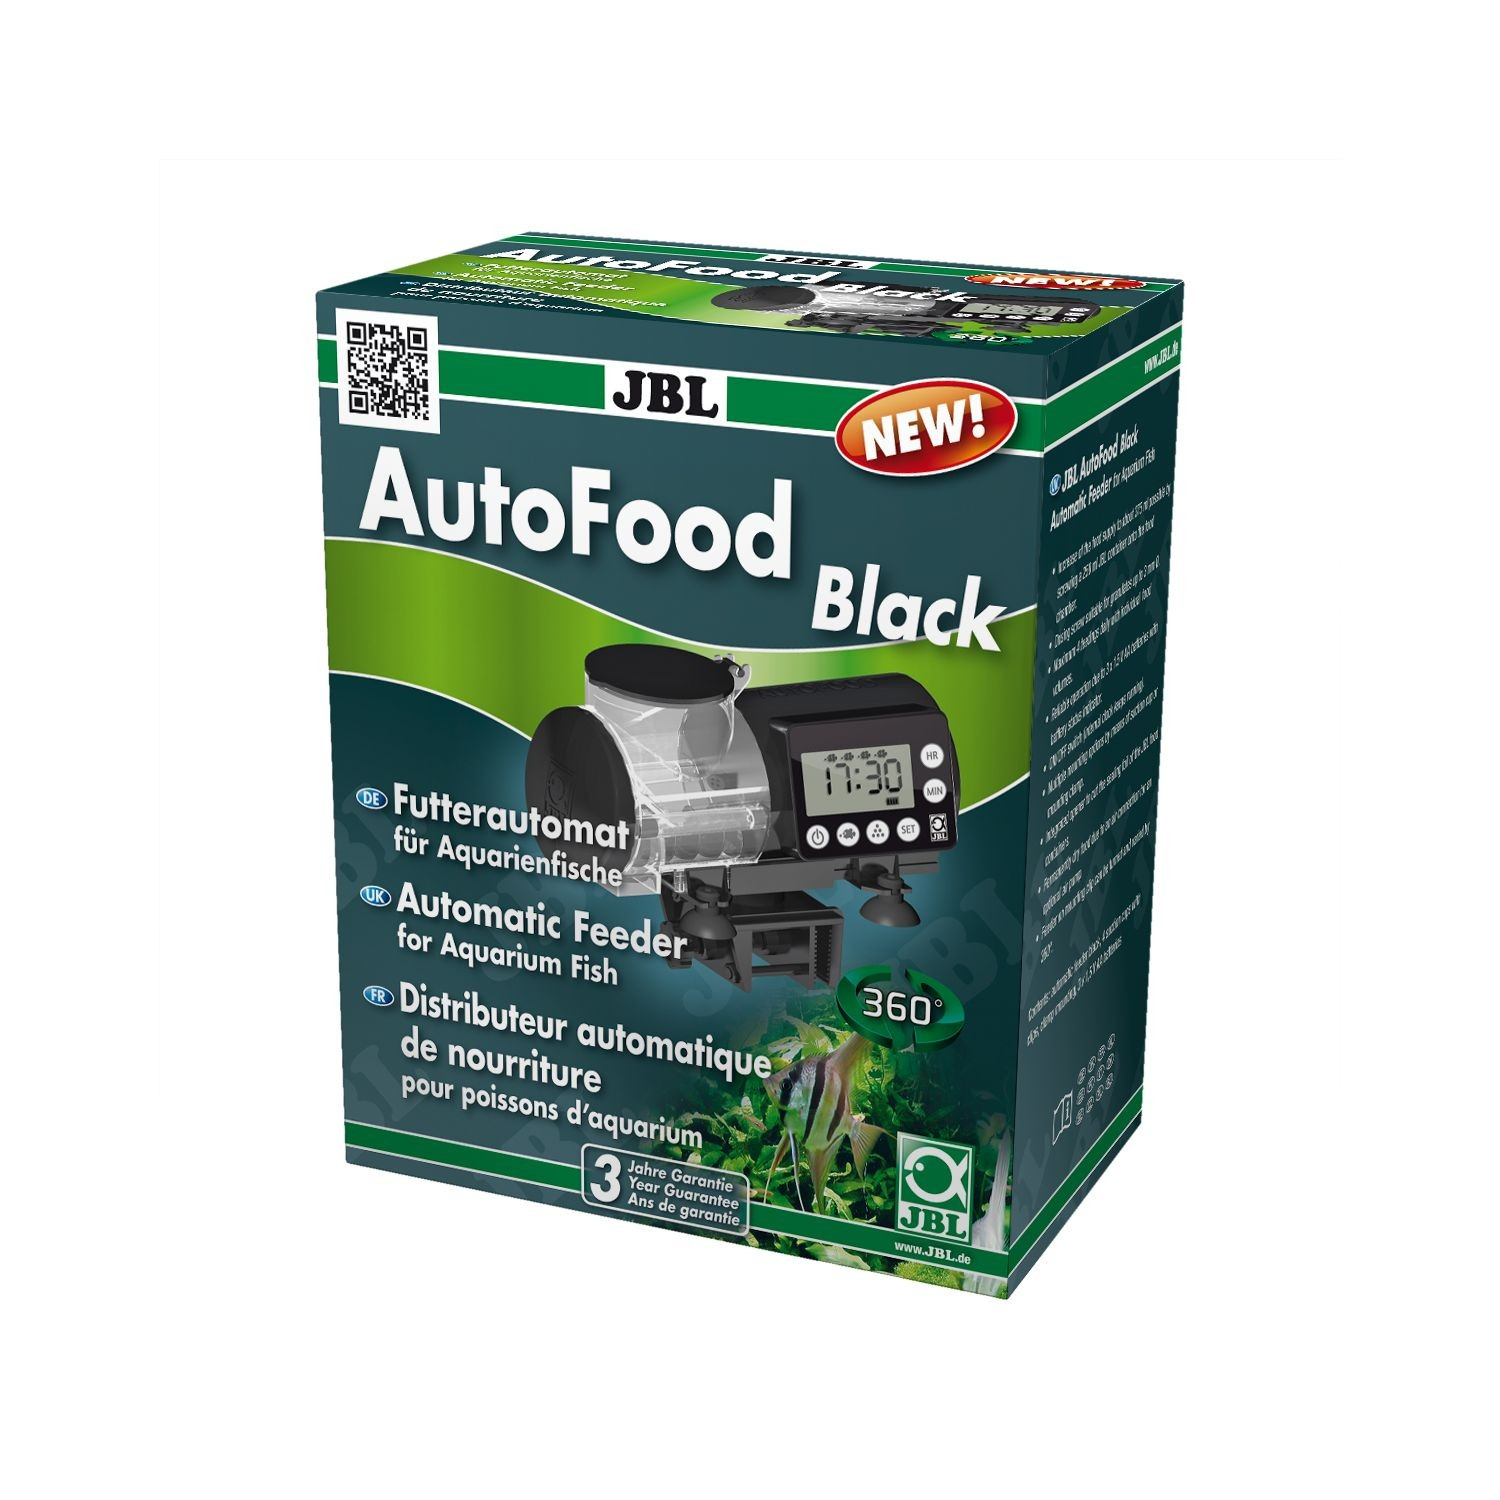 JBL AutoFood distribuidor automático de alimentos